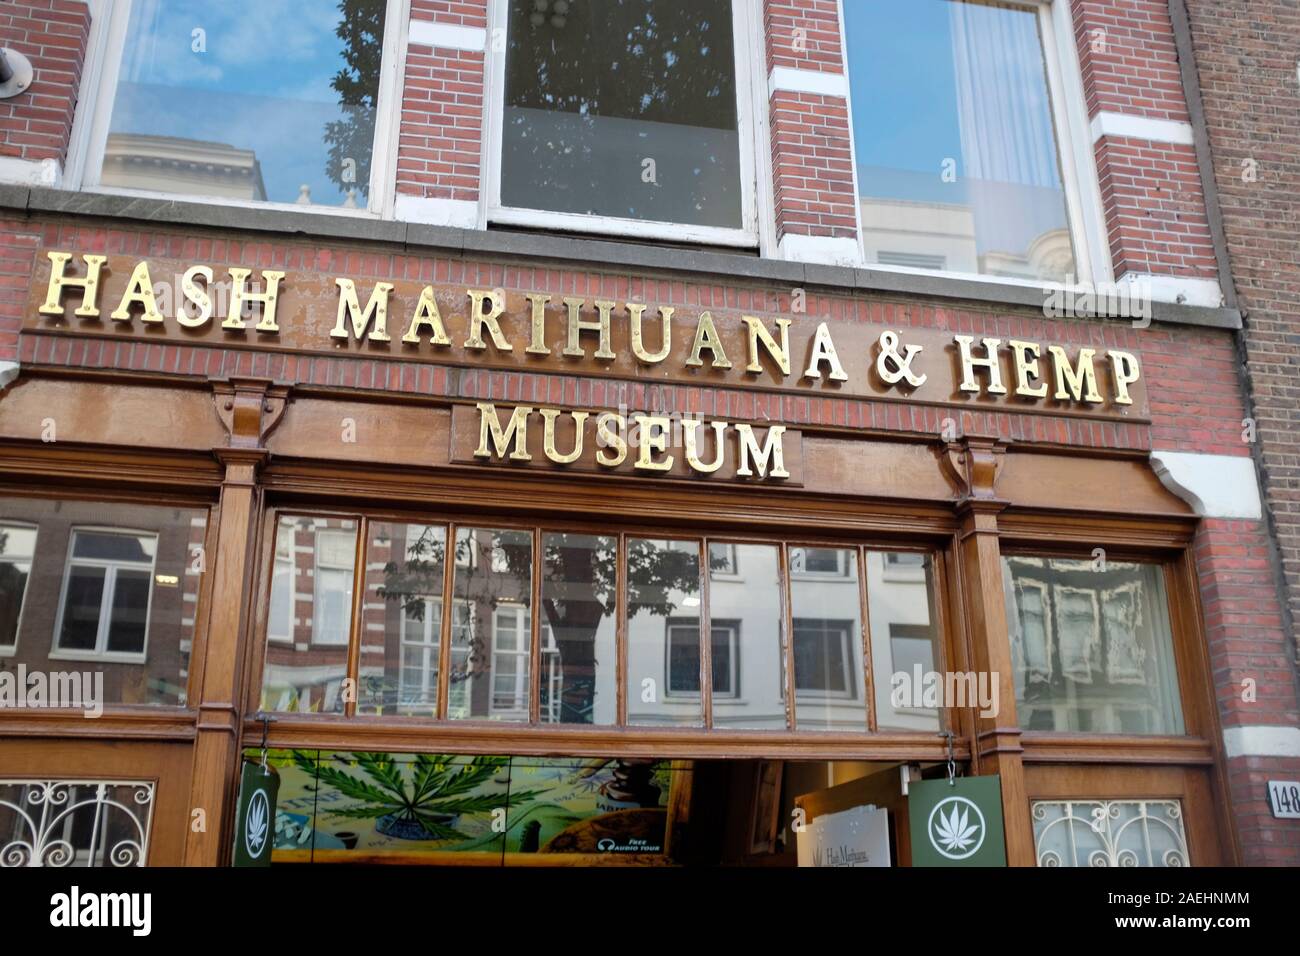 Hash Marihuana & Hemp Museum, Amsterdam, Netherlands Stock Photo